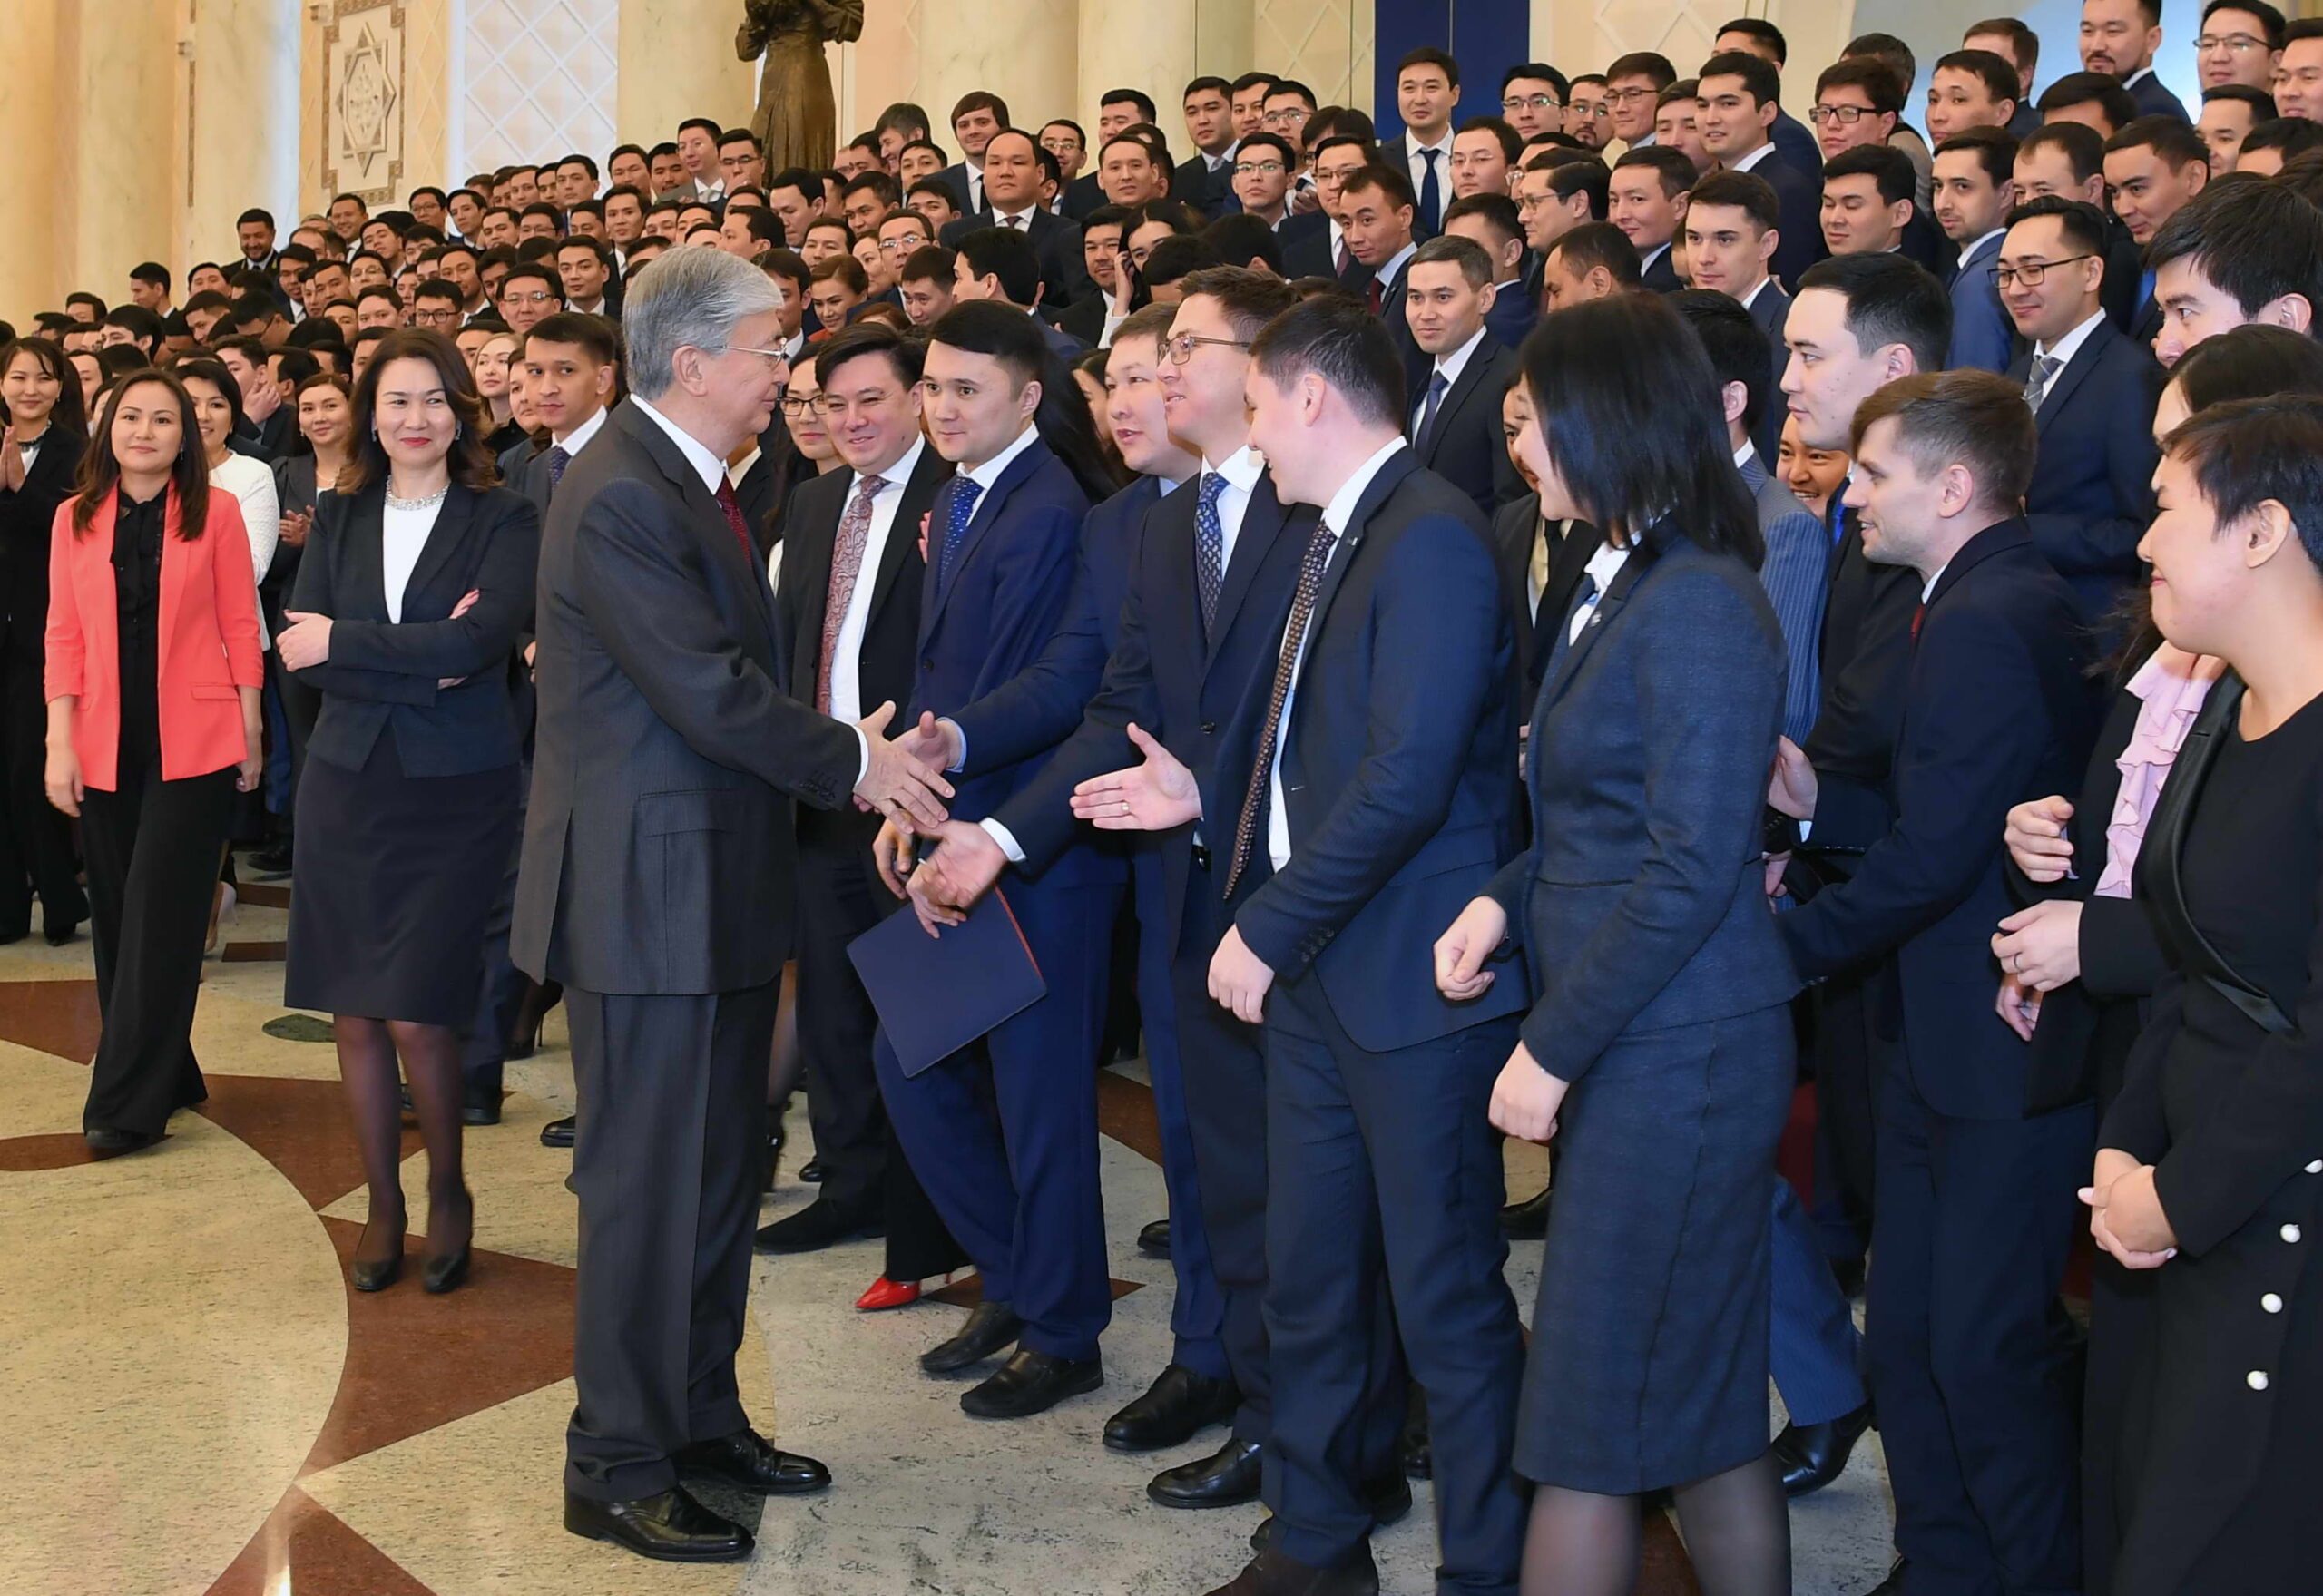 Молодые, прогрессивные голоса набирают силу в правительстве Казахстана - Bizmedia.kz